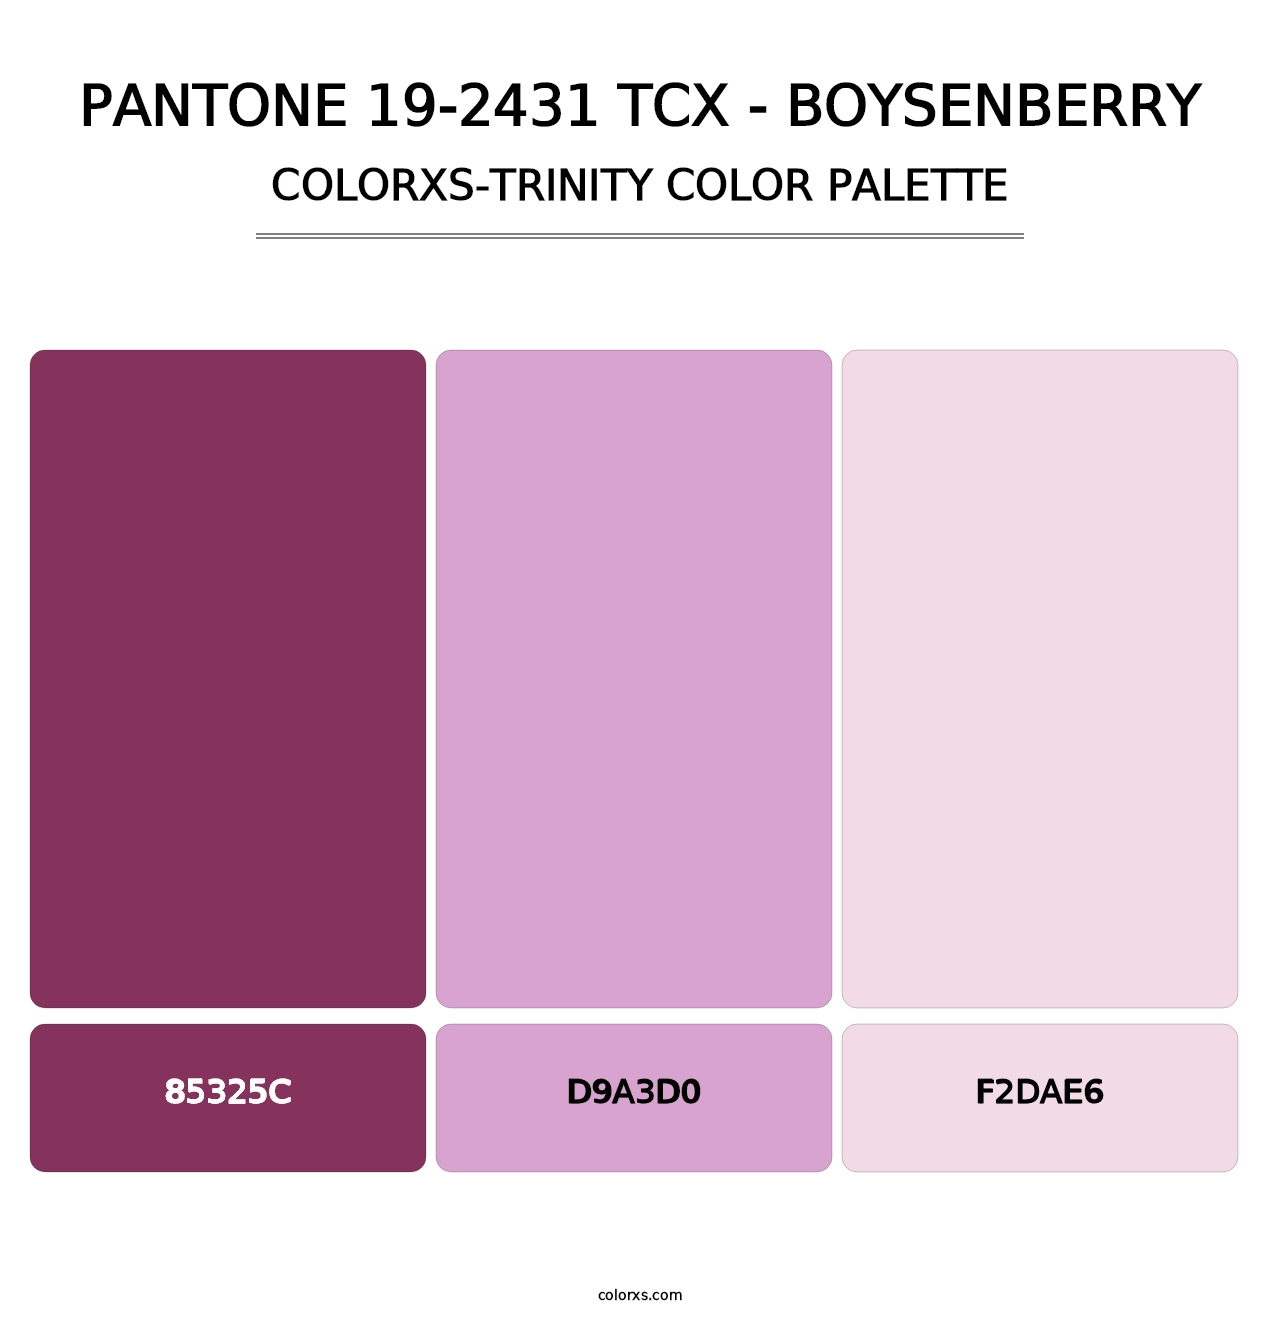 PANTONE 19-2431 TCX - Boysenberry - Colorxs Trinity Palette